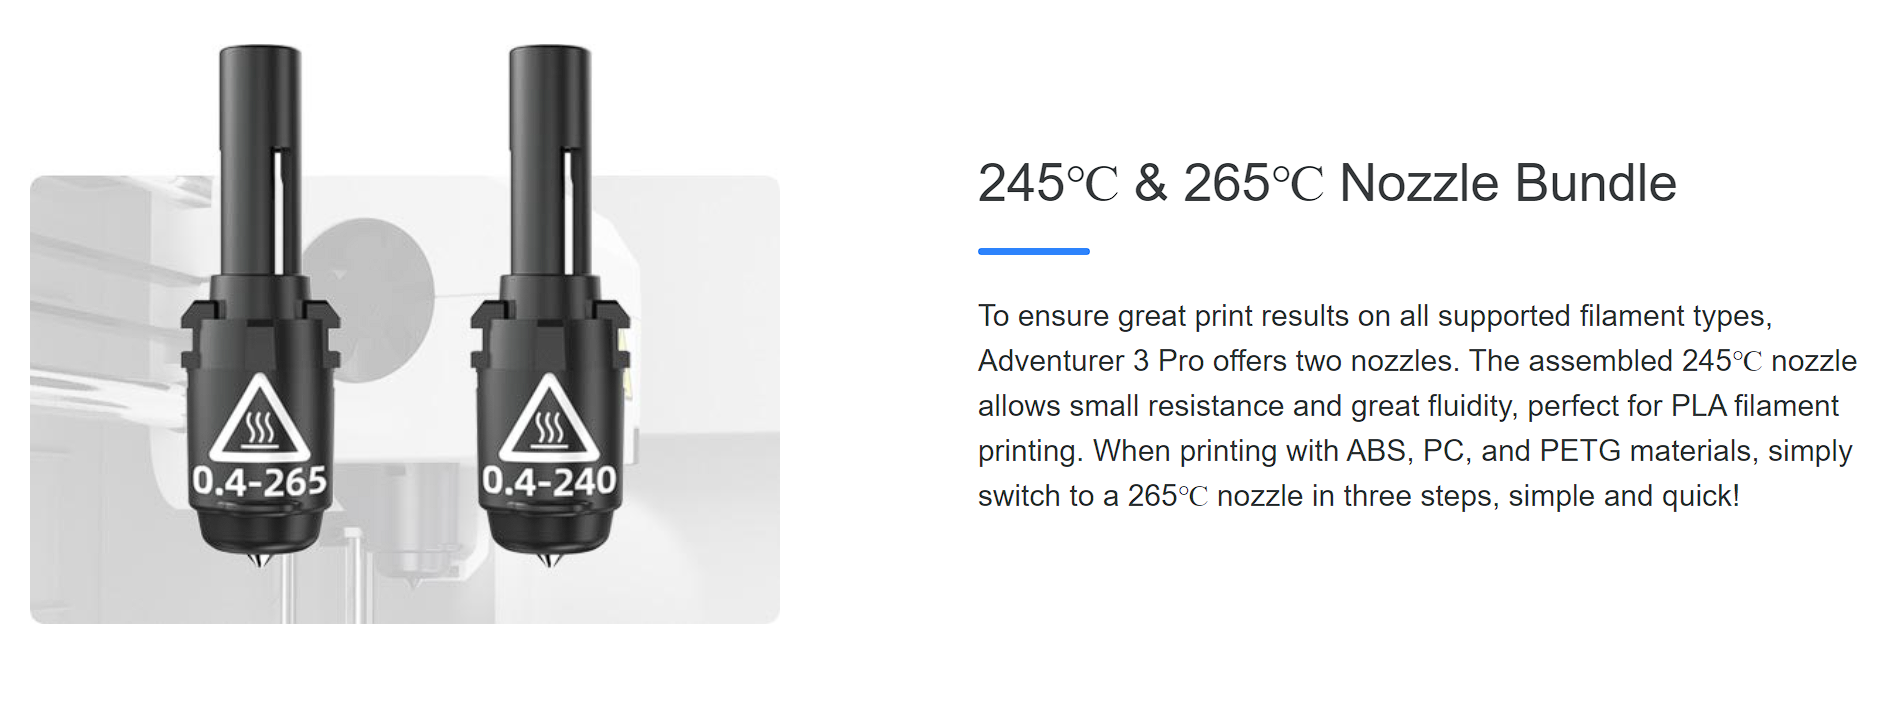 3DPrinternational FlashForge Adventurer 3 Pro 3D Printer Features